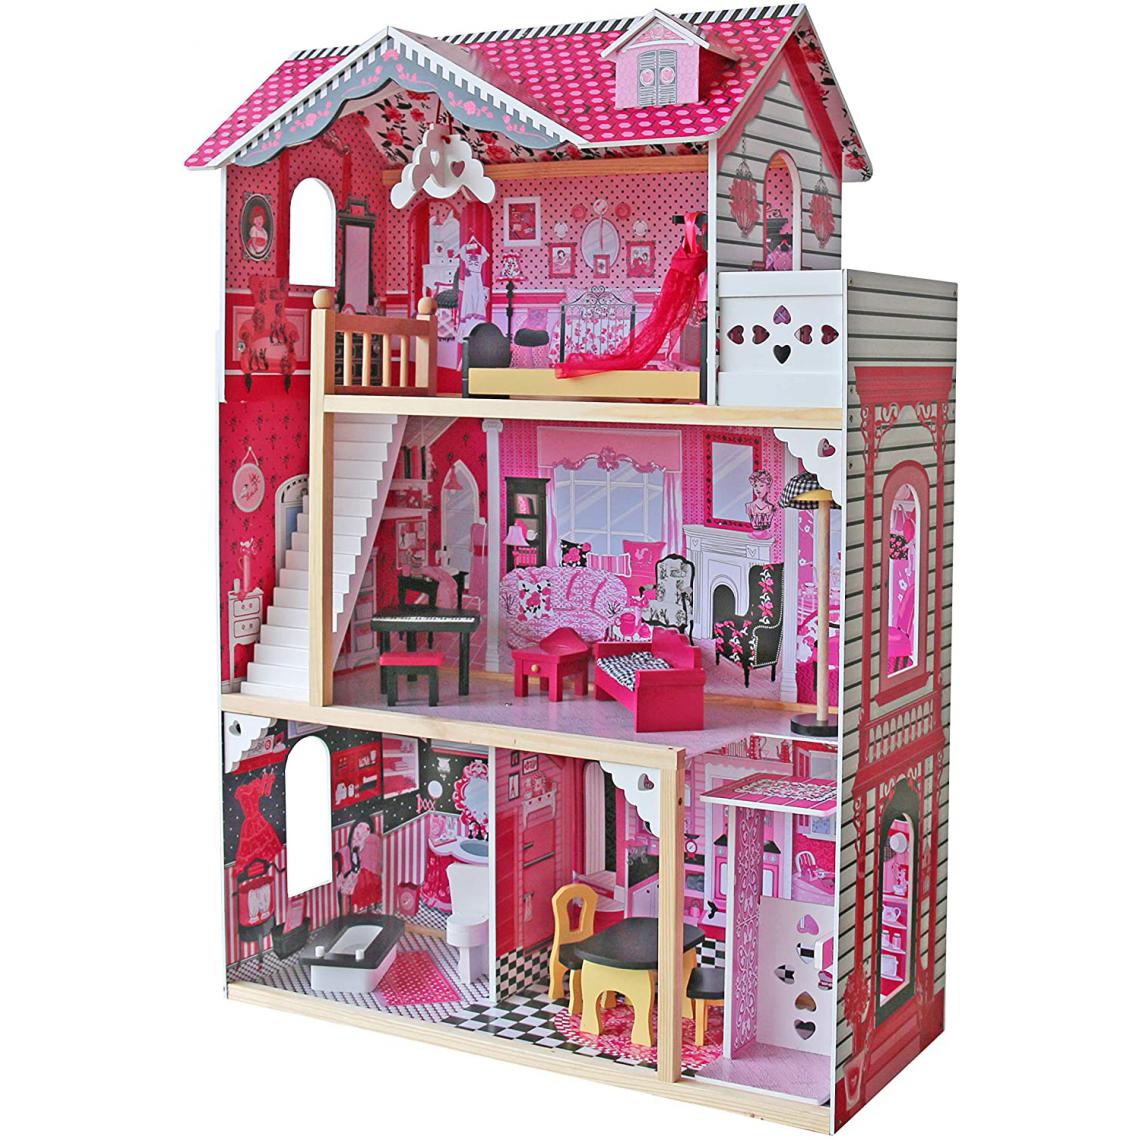 Helloshop26 - Maison de poupée en bois 3 étages incluant meubles et accessoires (12 pièces) pour poupée de 27 cm maison de rêve rose 01_0000336 - Cuisine et ménage